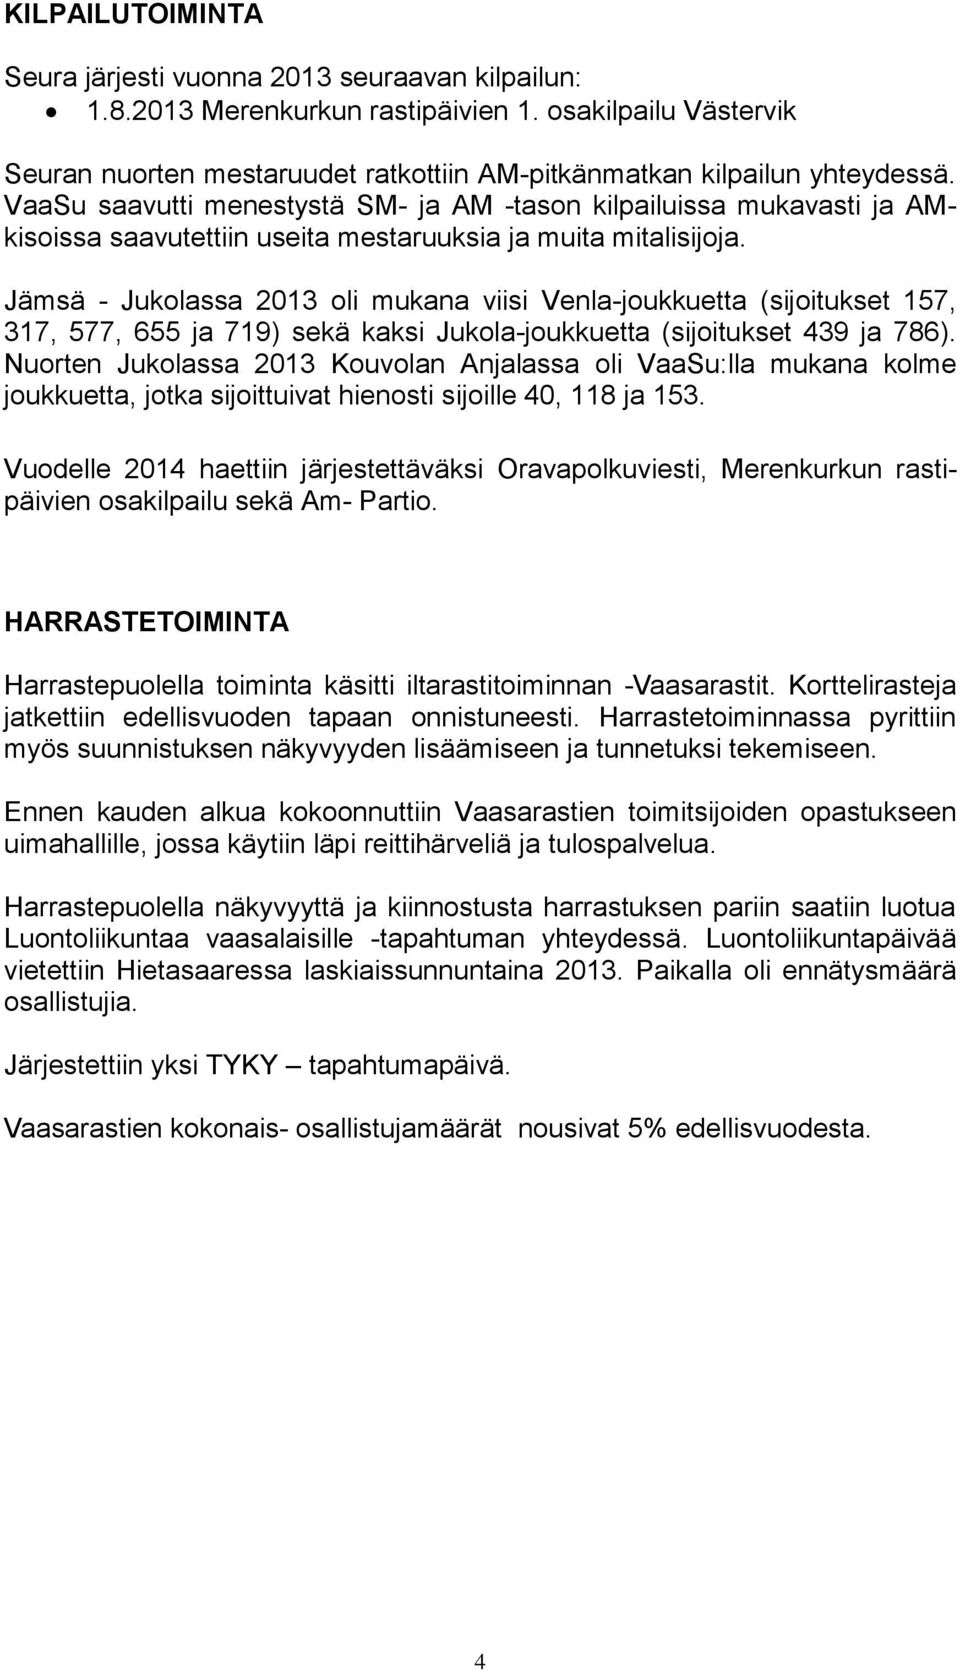 Jämsä - Jukolassa 2013 oli mukana viisi Venla-joukkuetta (sijoitukset 157, 317, 577, 655 ja 719) sekä kaksi Jukola-joukkuetta (sijoitukset 439 ja 786).